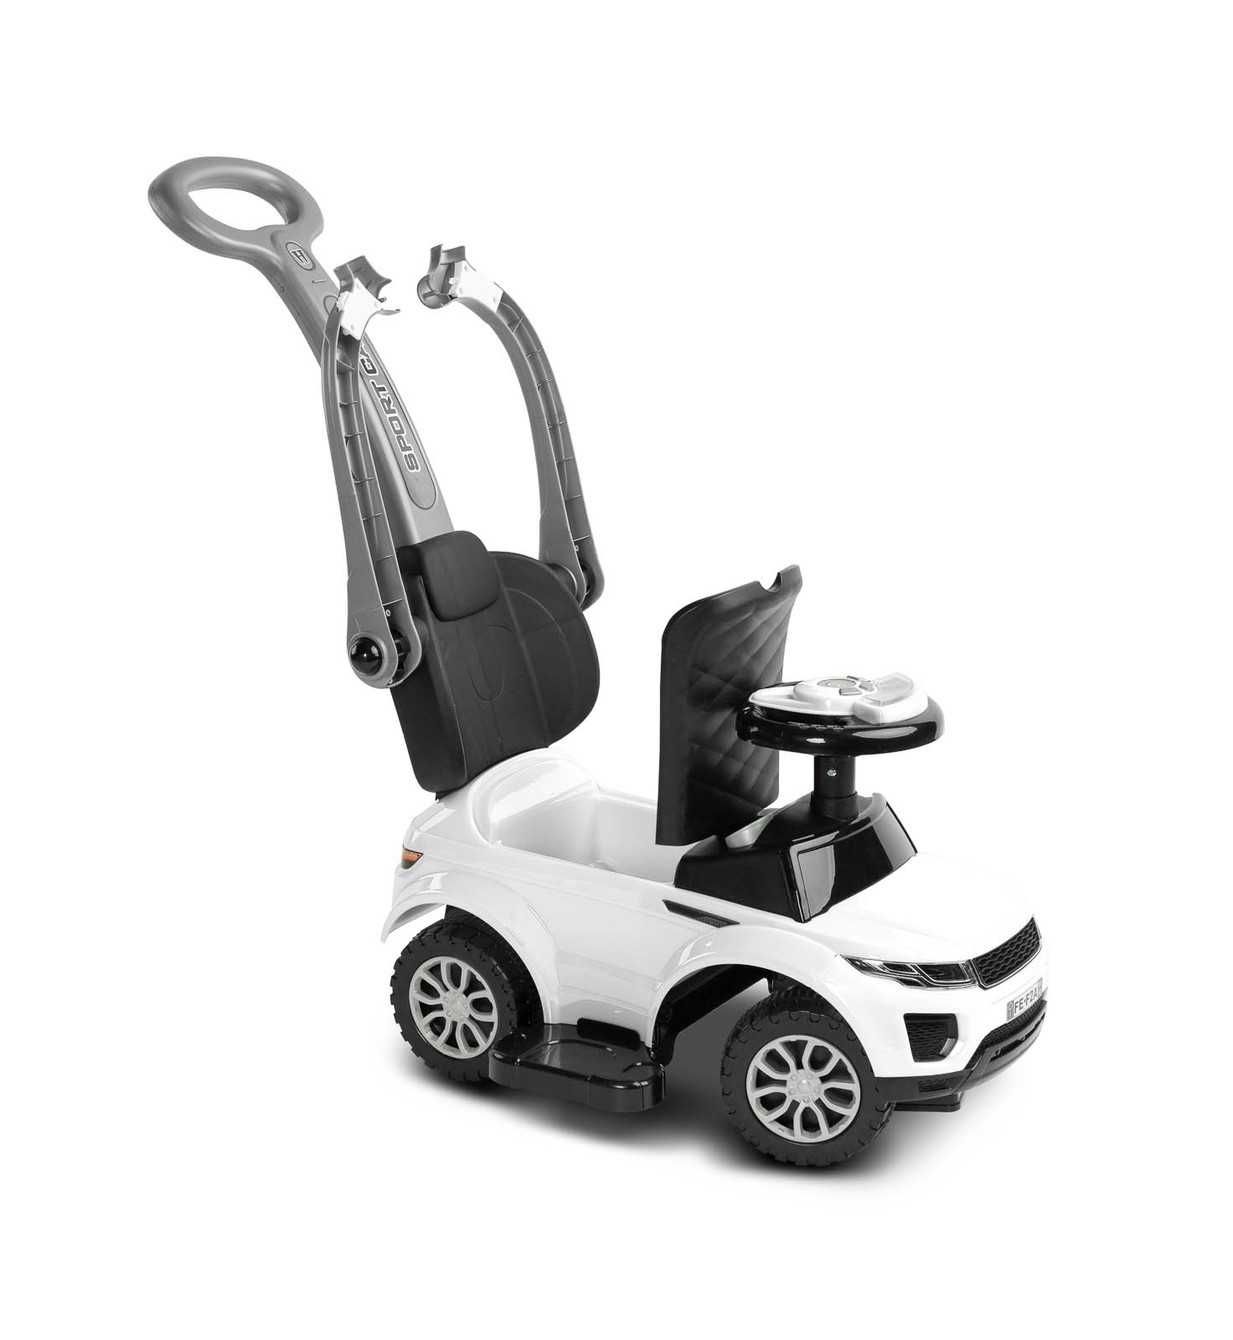 Jeździk SPORT CAR White biały pojazd pchacz dla dziecka 12-36 miesięcy